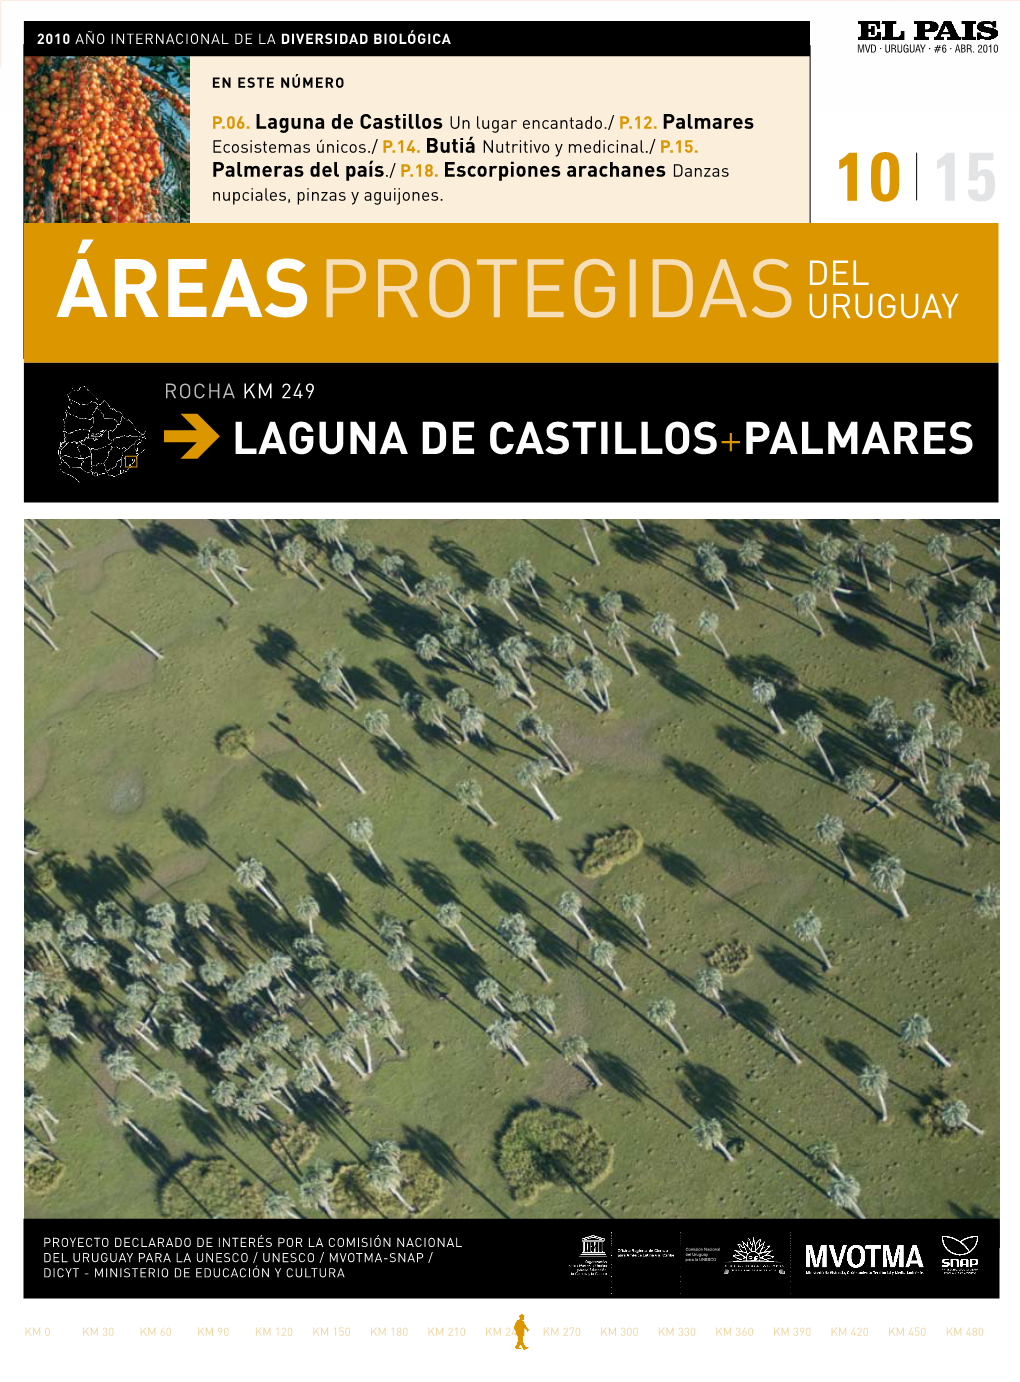 Laguna De Castillos Y Palmares De Rocha